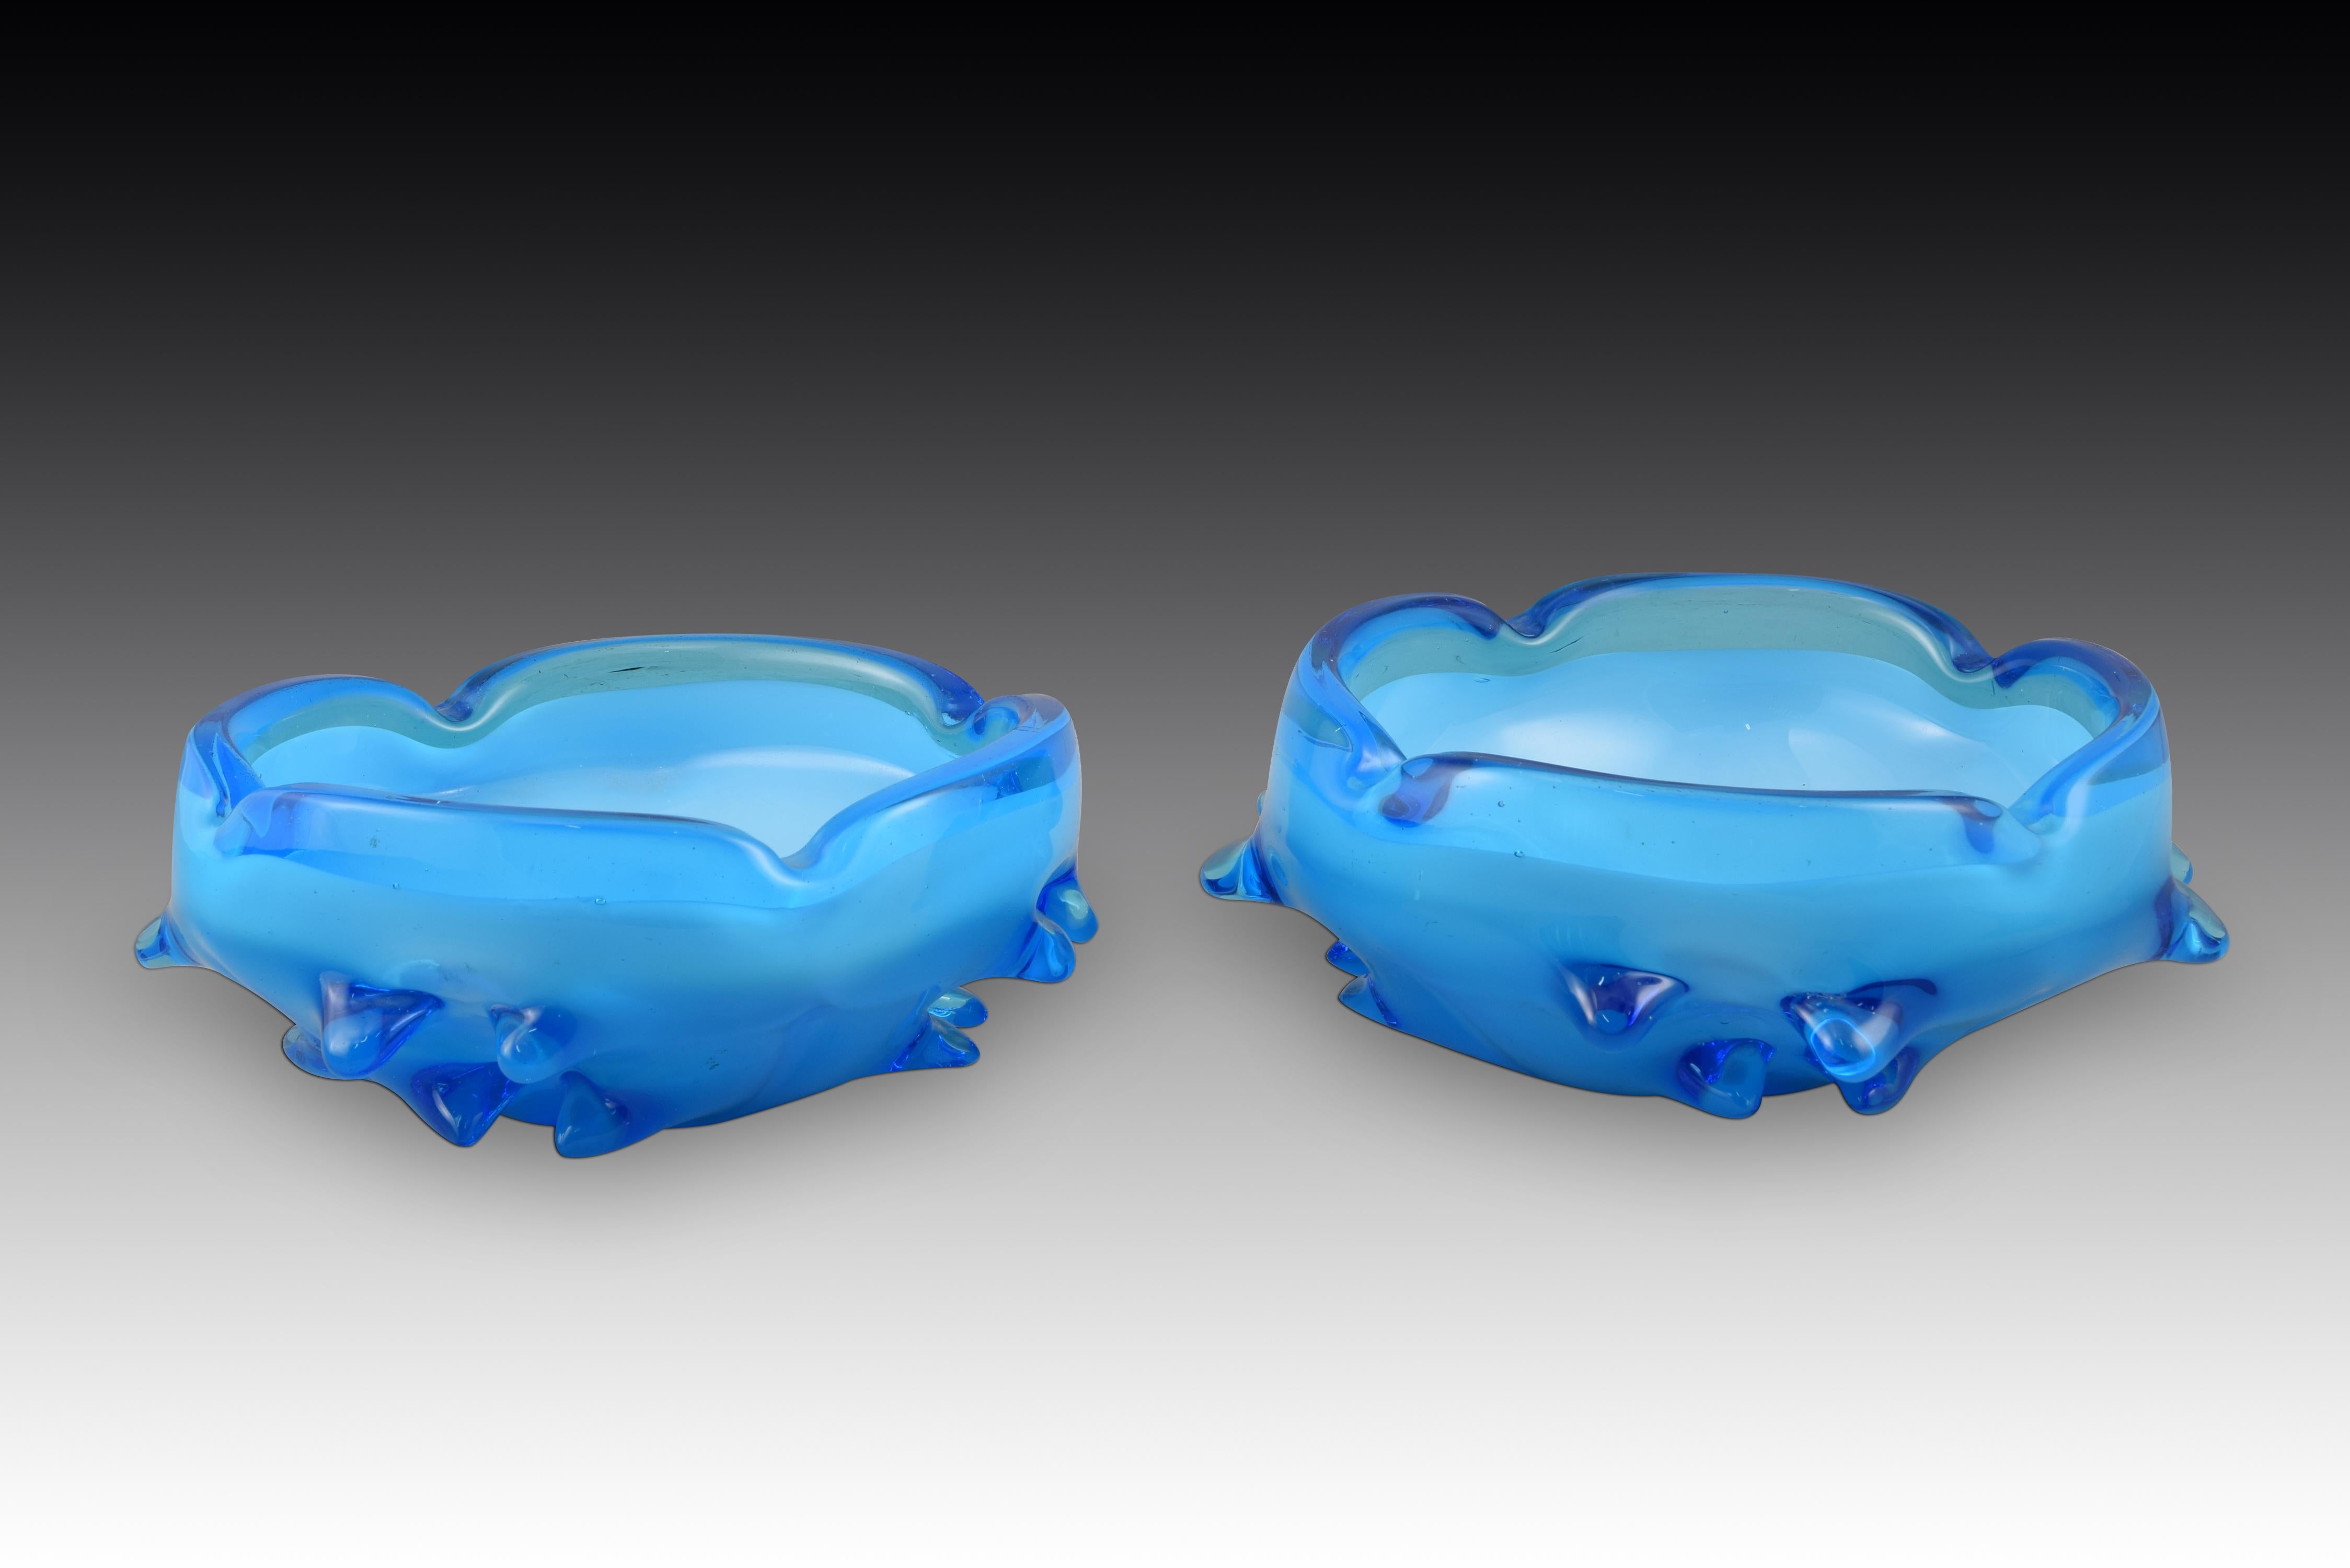 Paar Aschenbecher. Blaues Glas. Murano, Italien, 20. Jahrhundert. 
Zwei Glasaschenbecher, die zwei Blautöne kombinieren und außen mit einer Reihe von dicken Vorsprüngen oder Stacheln am Boden verziert sind. Aufgrund der Form und der Qualität des